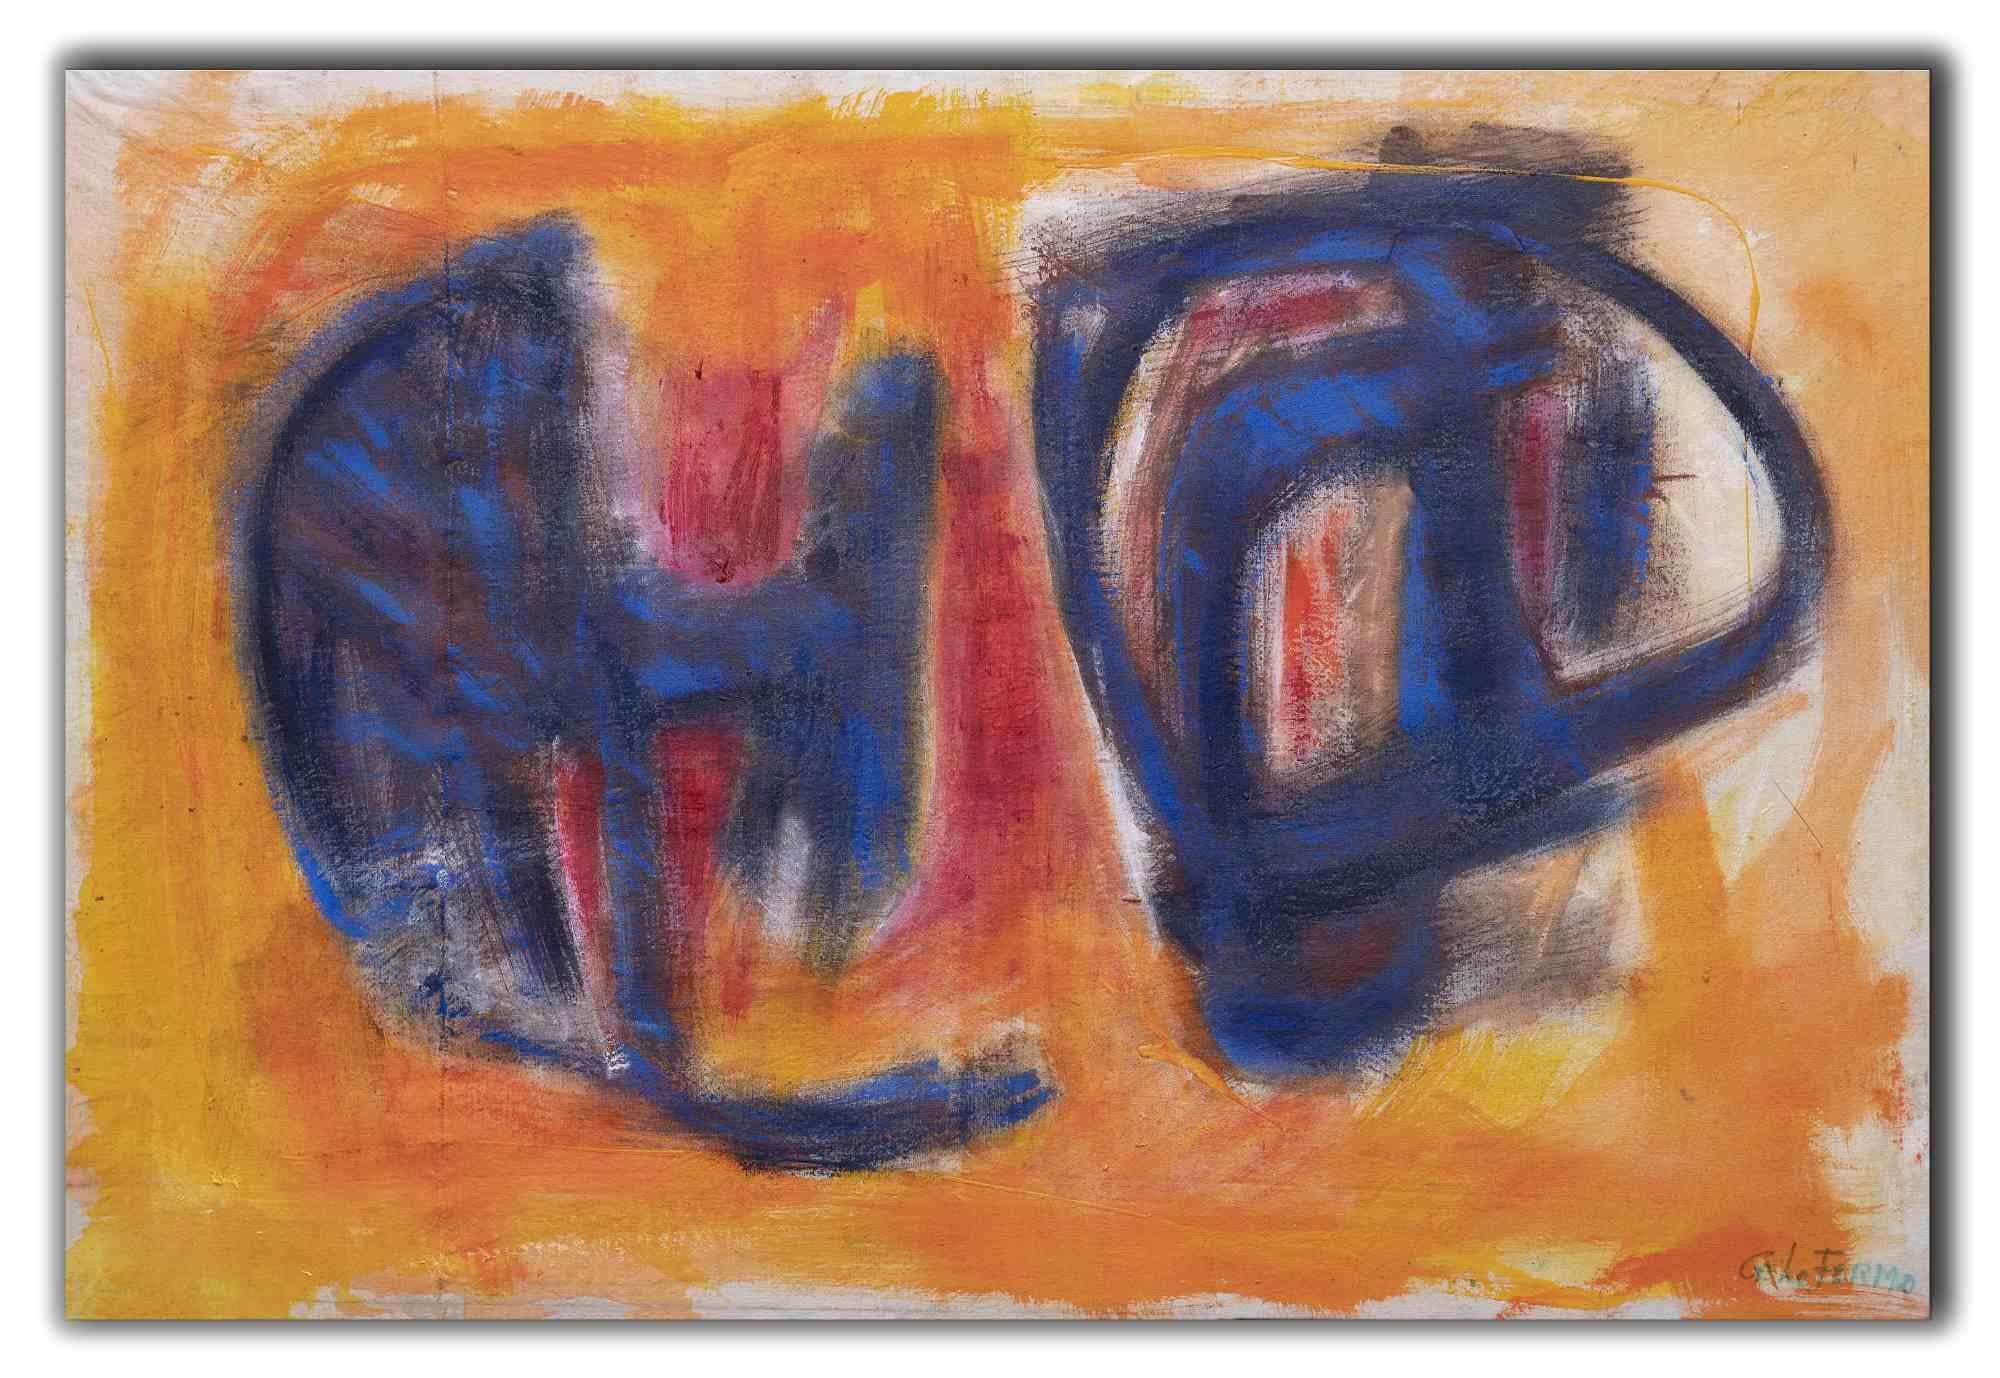 Abstract Expression ist ein Original-Kunstwerk von Giorgio Lo Fermo (geb. 1947) aus dem Jahr 2014.

Original Ölgemälde auf Leinwand.

Handsigniert, betitelt und datiert auf der Rückseite der Leinwand.

Handsigniert in der rechten unteren